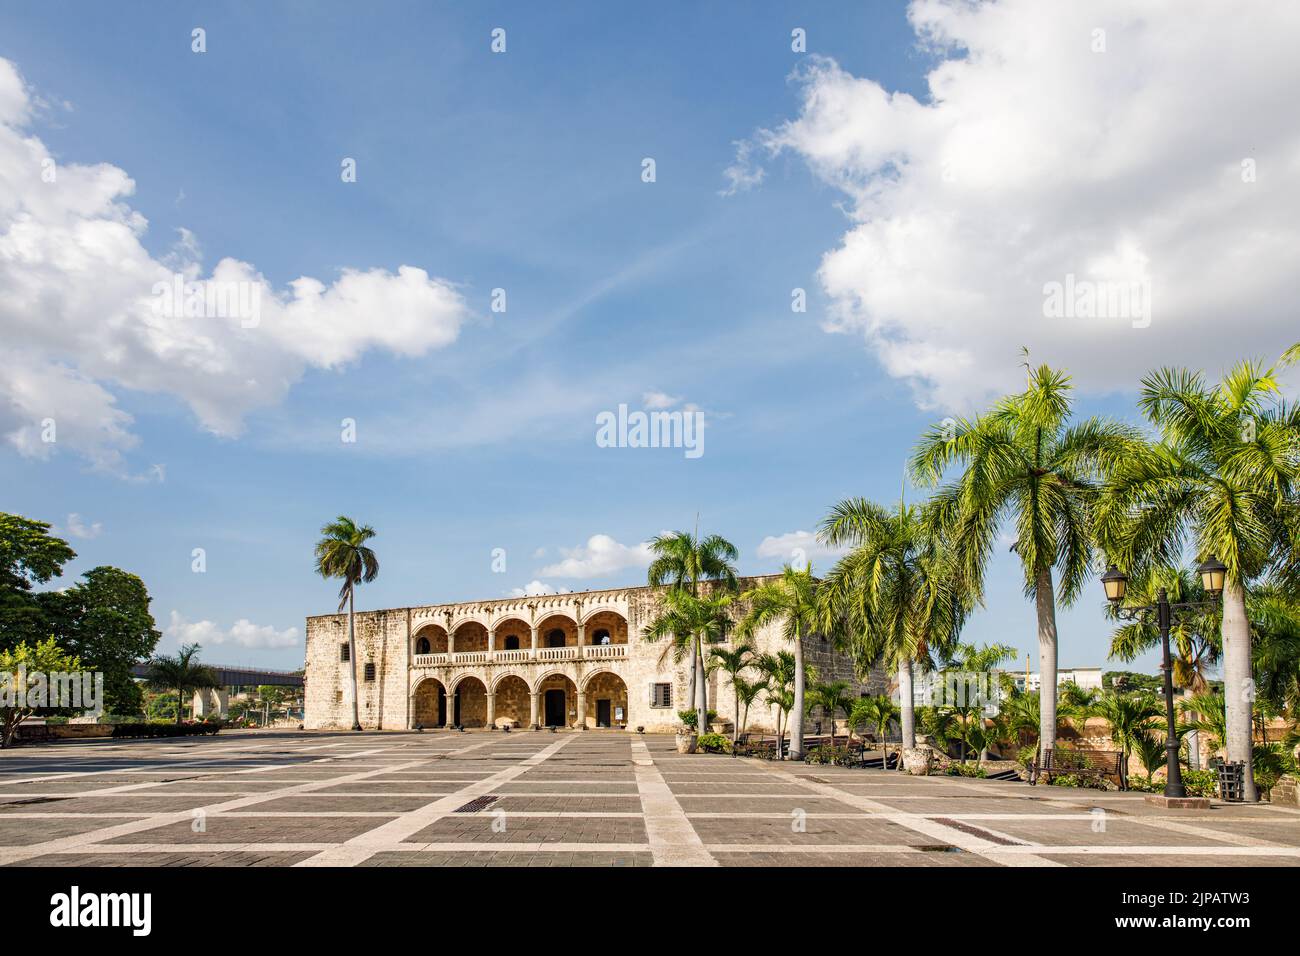 Alcazar de Colon, residenza di Diego Columbus situata in Piazza di Spagna. Zona coloniale della città, dichiarato. Santo Domingo, Repubblica Dominicana. Foto Stock